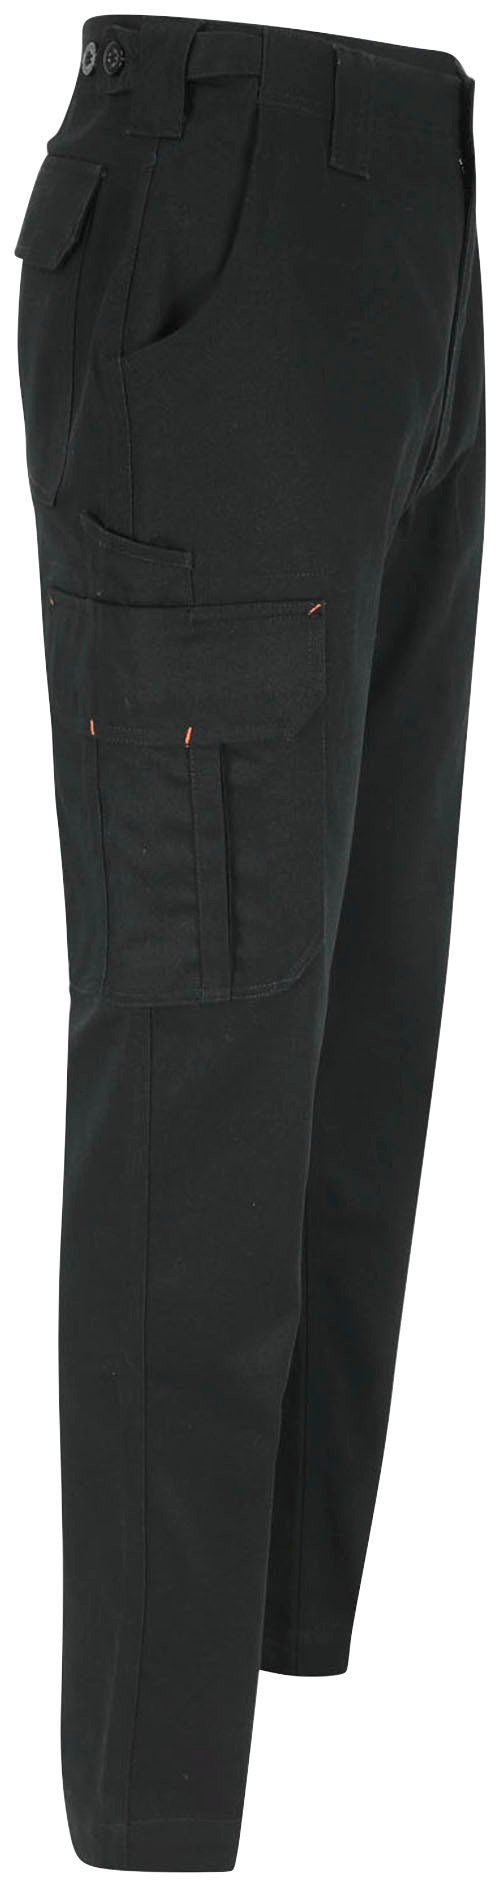 Herock Arbeitshose Odin Taschen, Hose wasserabweisend, 100% viele Bund einstellbarer Baumwolle